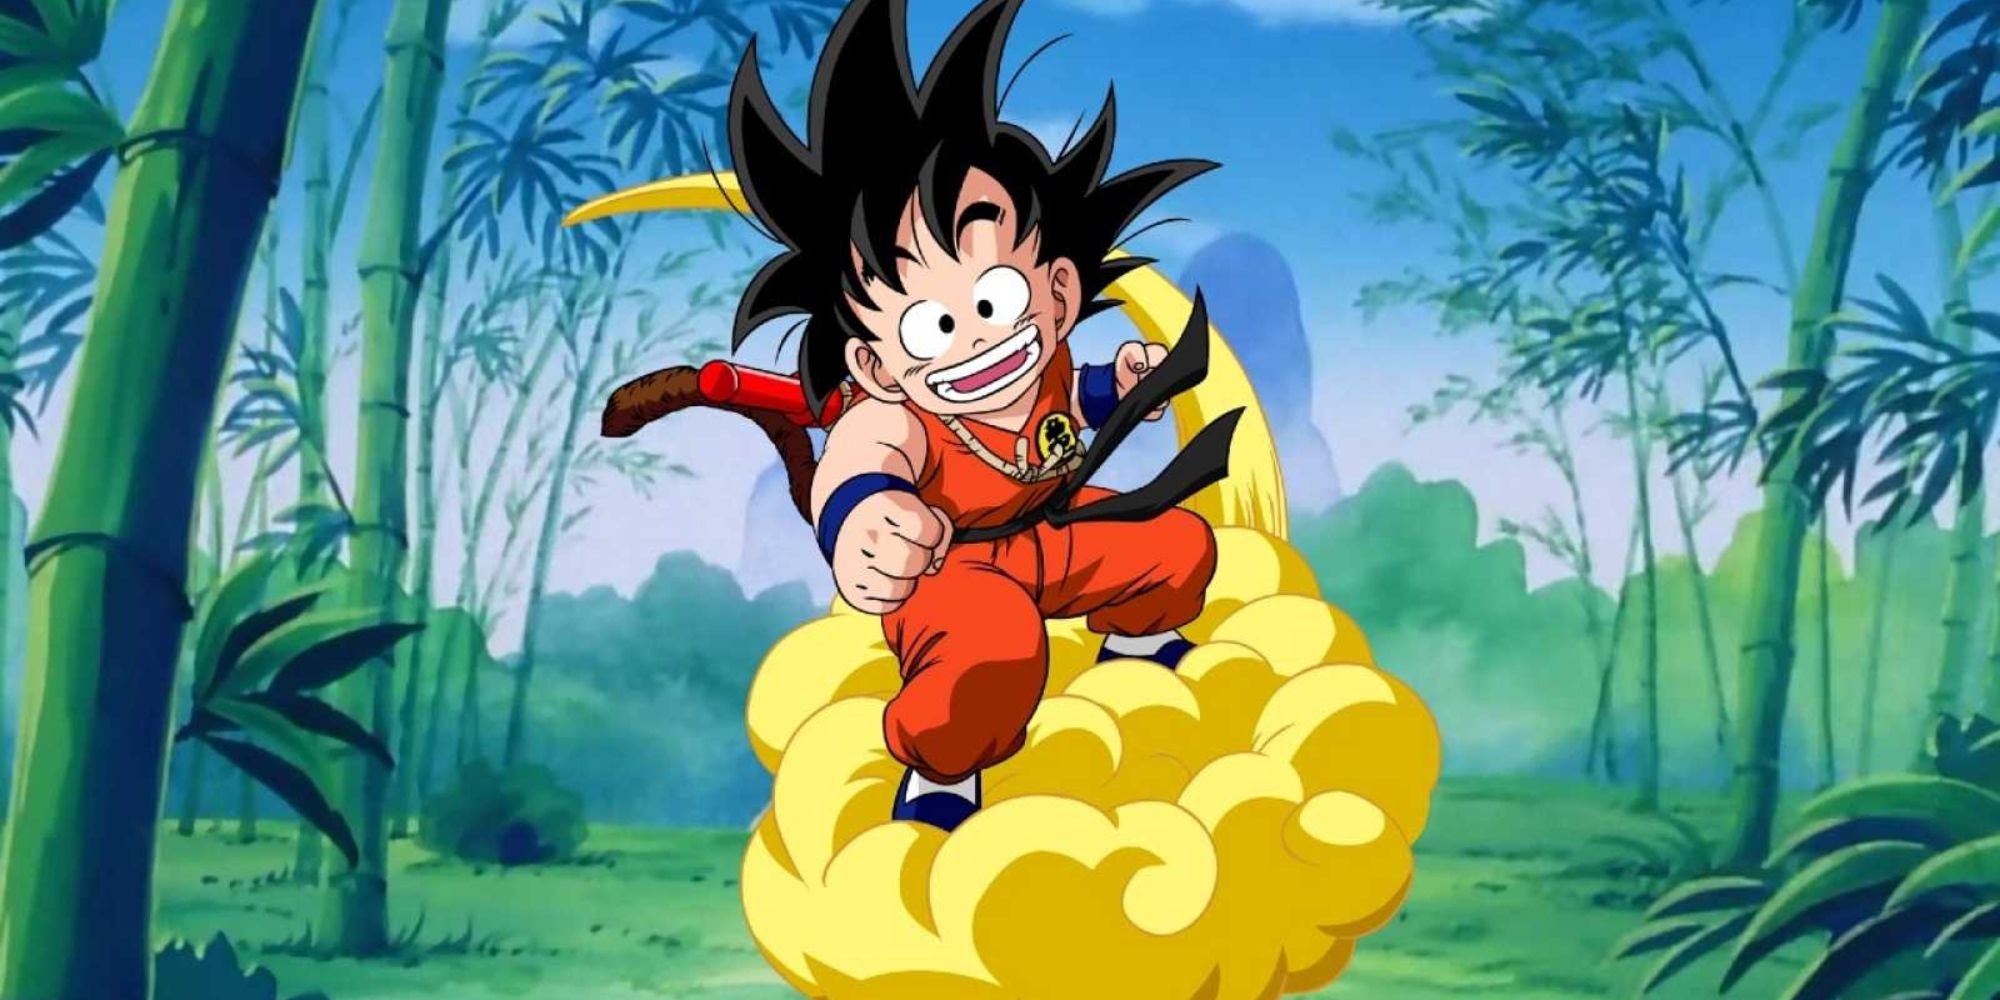 Goku in Dragon Ball